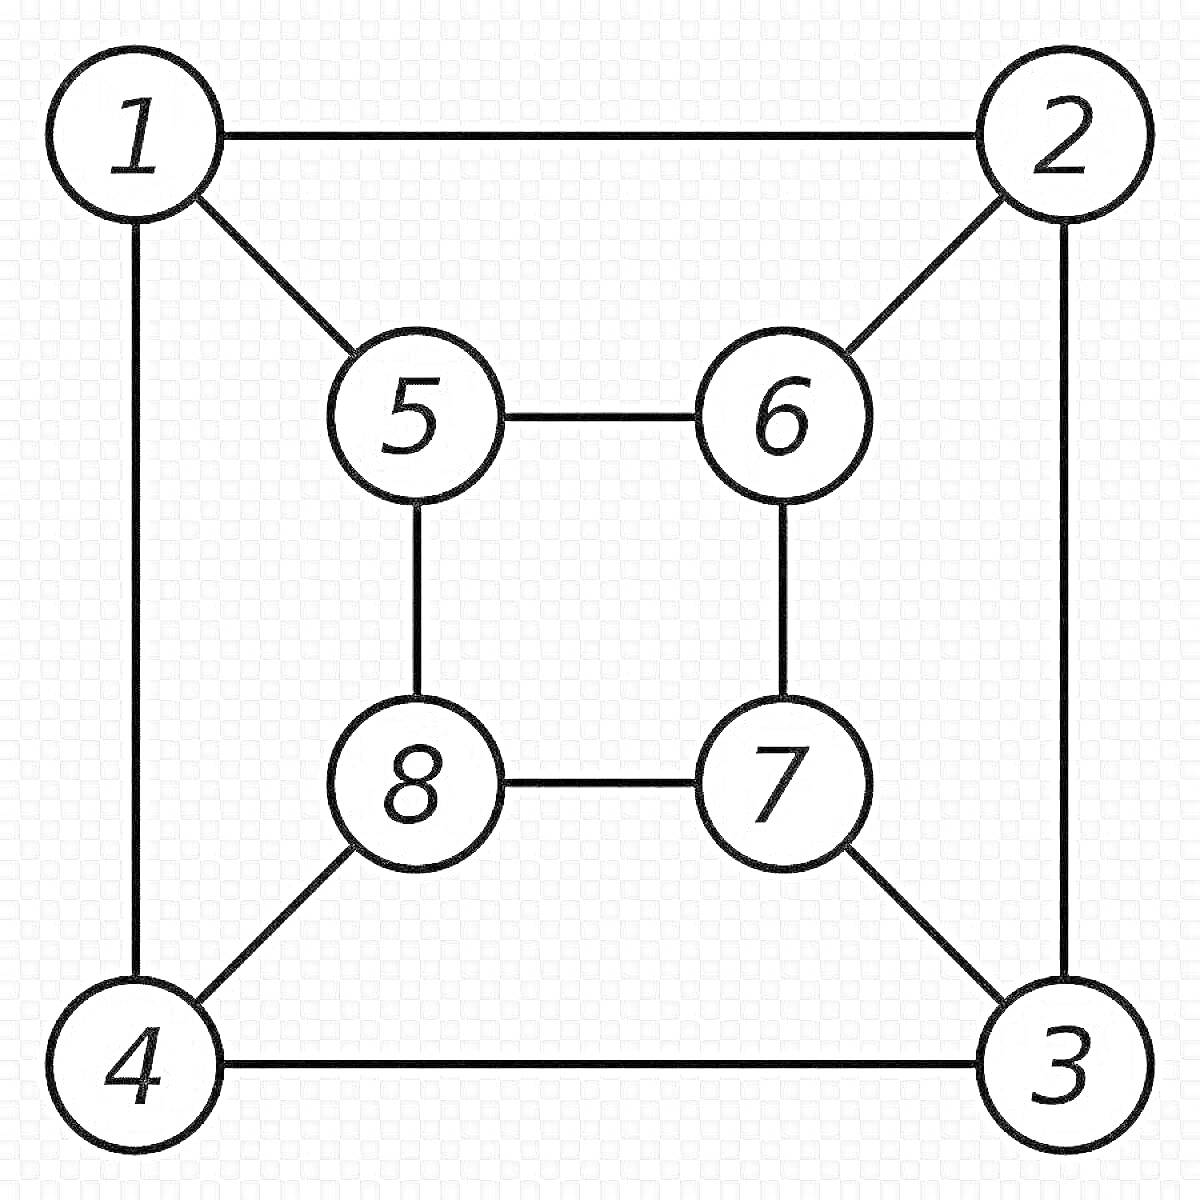 граф с восемью вершинами, граф, восемь вершин, нумерация вершин, вершины с цифрами, рёбра графа, планарный граф